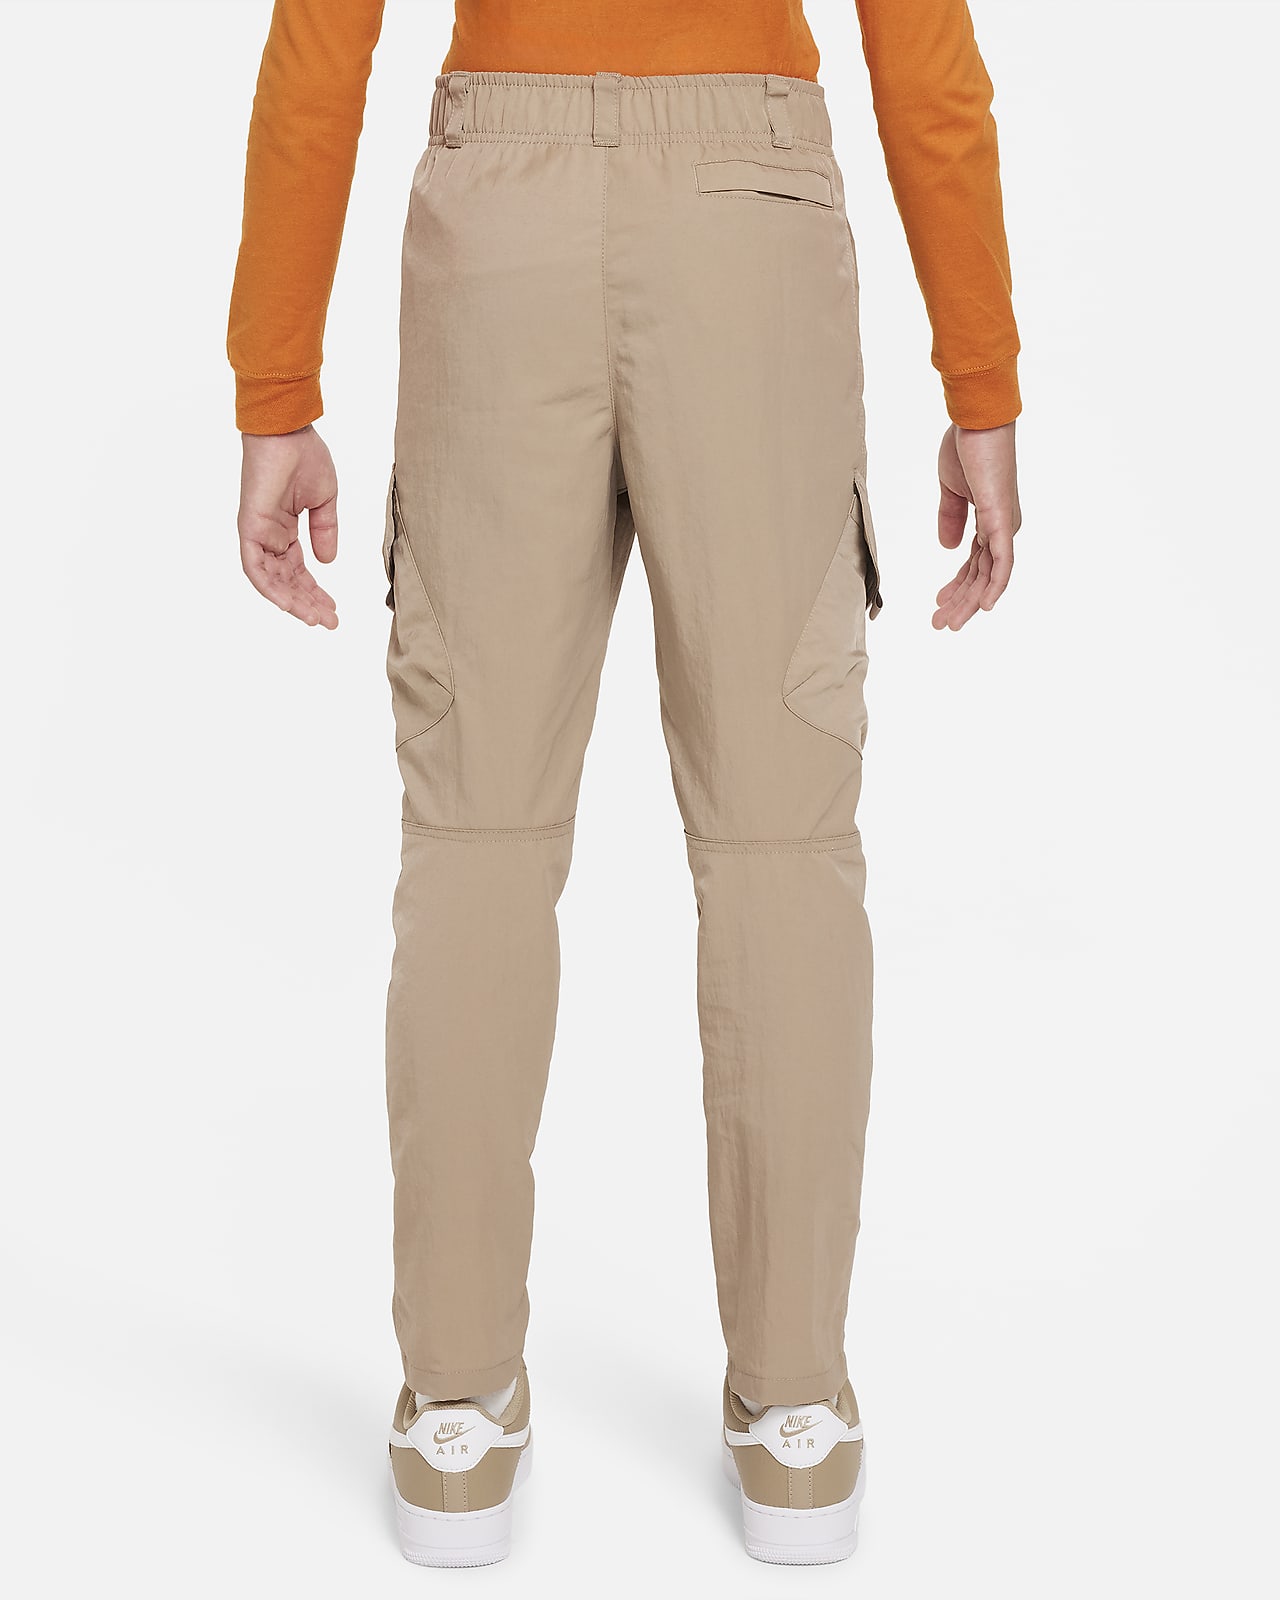 Nike Little Boys 2T-7 Woven Cargo Pants